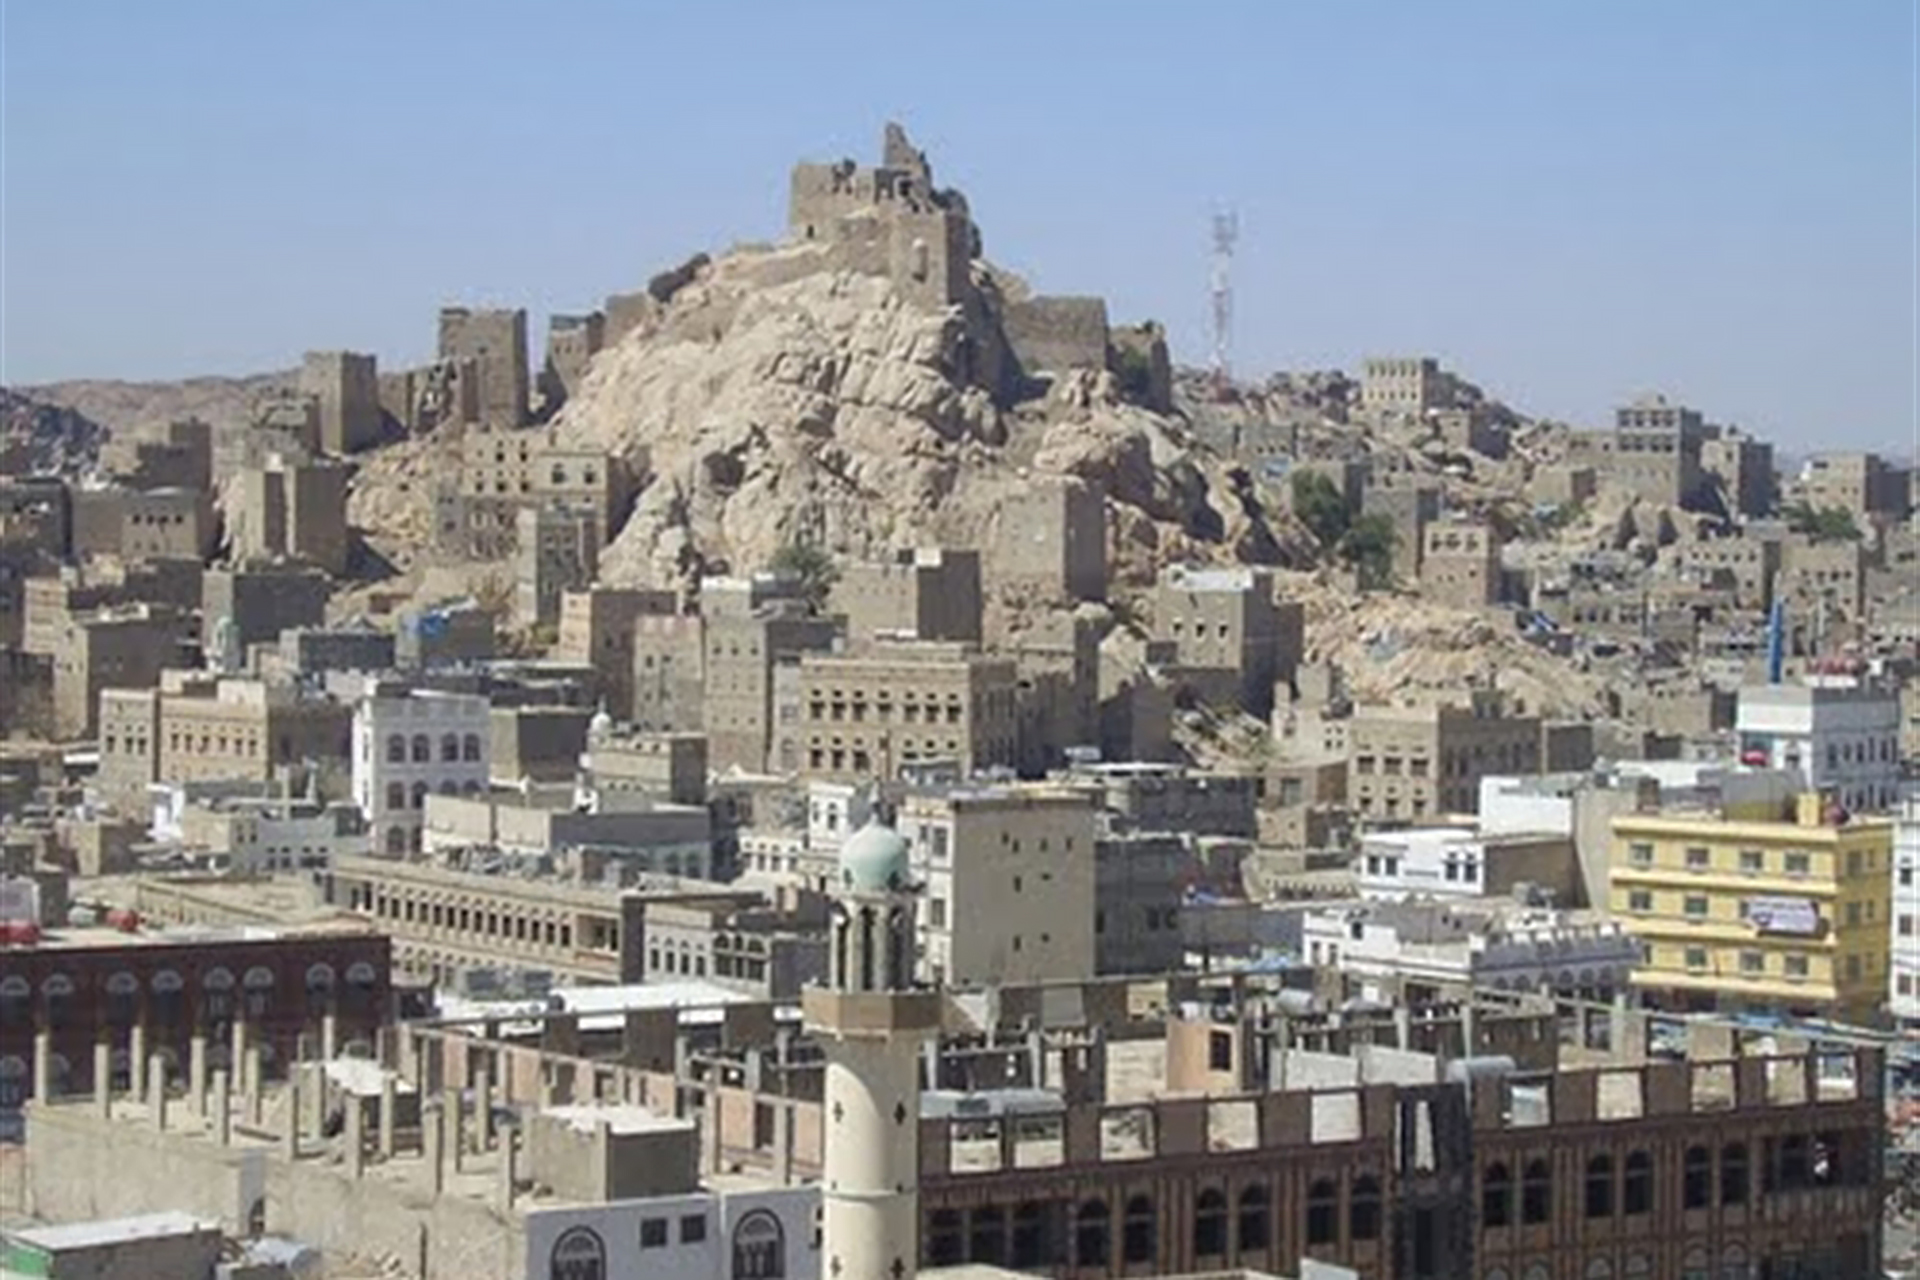 قتلى بتفجير الحوثيين منازل بالبيضاء والجماعة تتعهد بالتحقيق | أخبار – البوكس نيوز